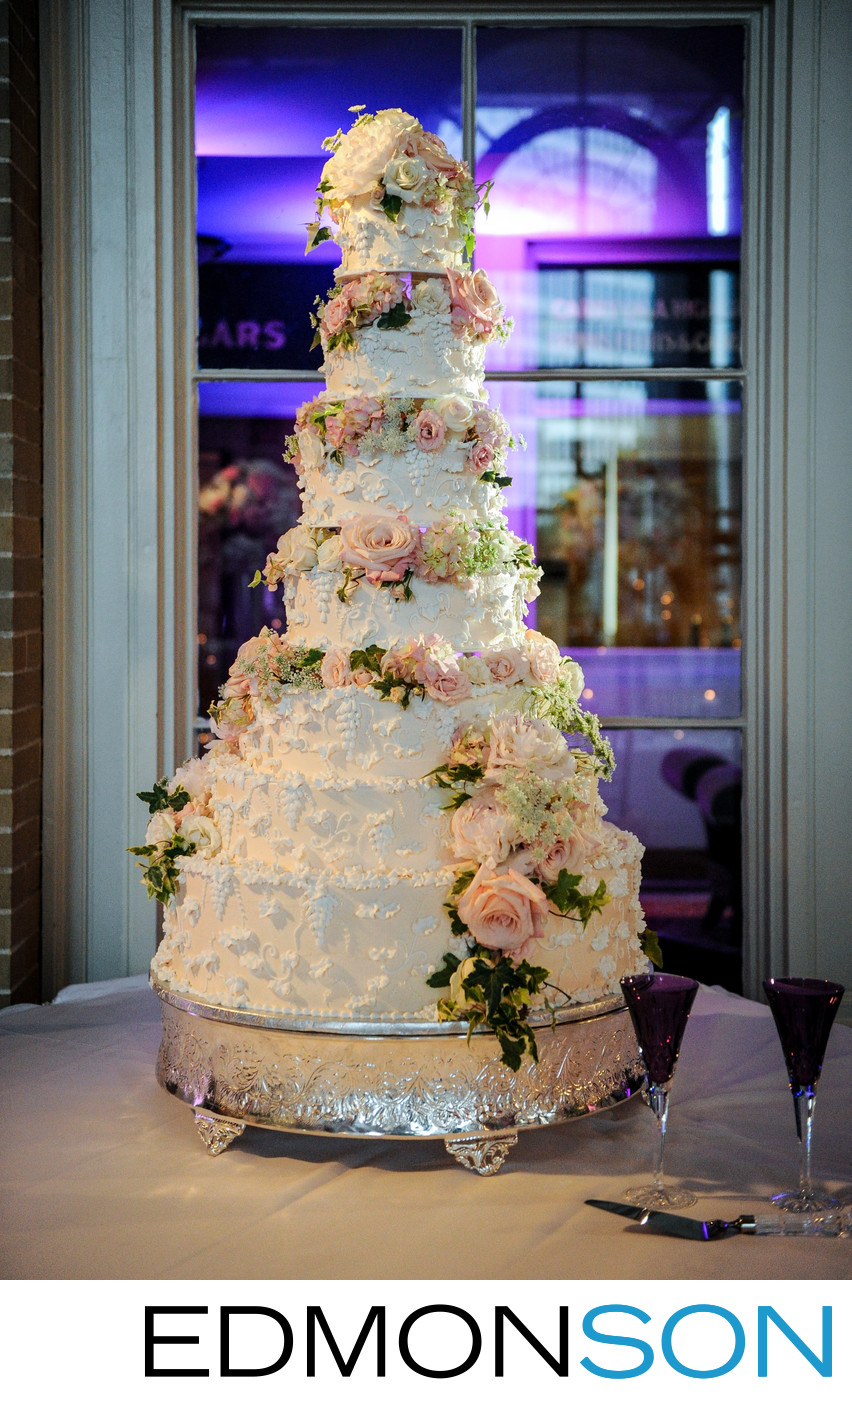 Union Station Reception Wedding Cake